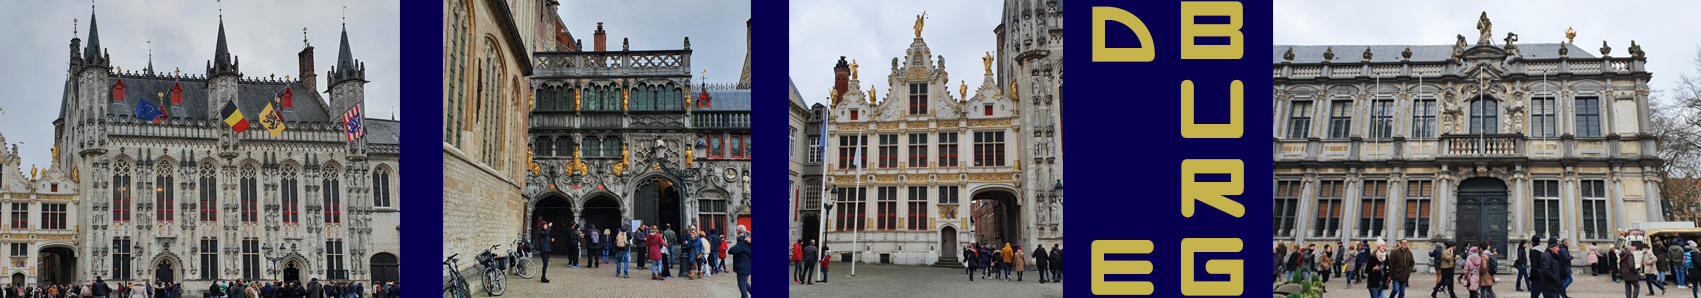 Uitgelichte Foto - Brugge - De Burg